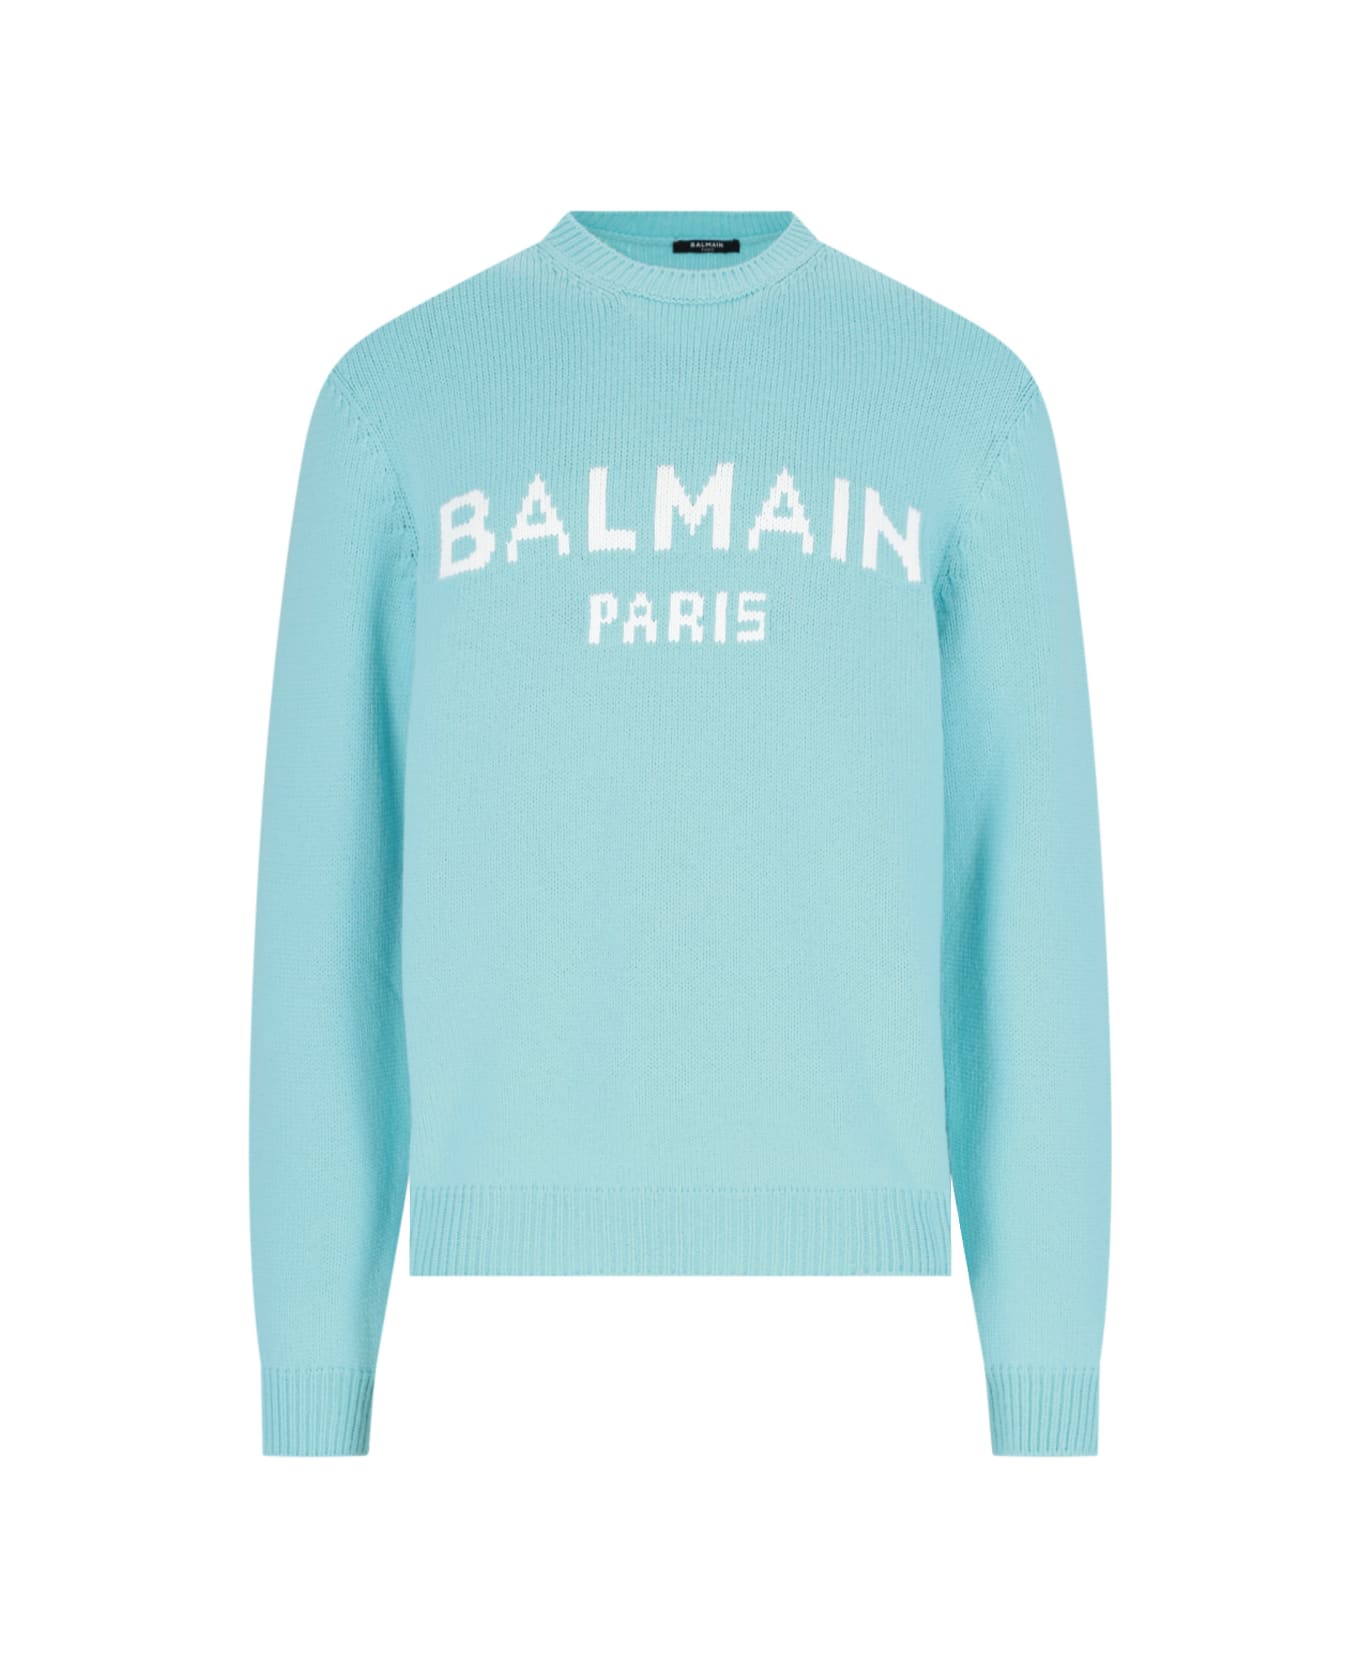 Balmain Wool Blend Sweater - Light Blue